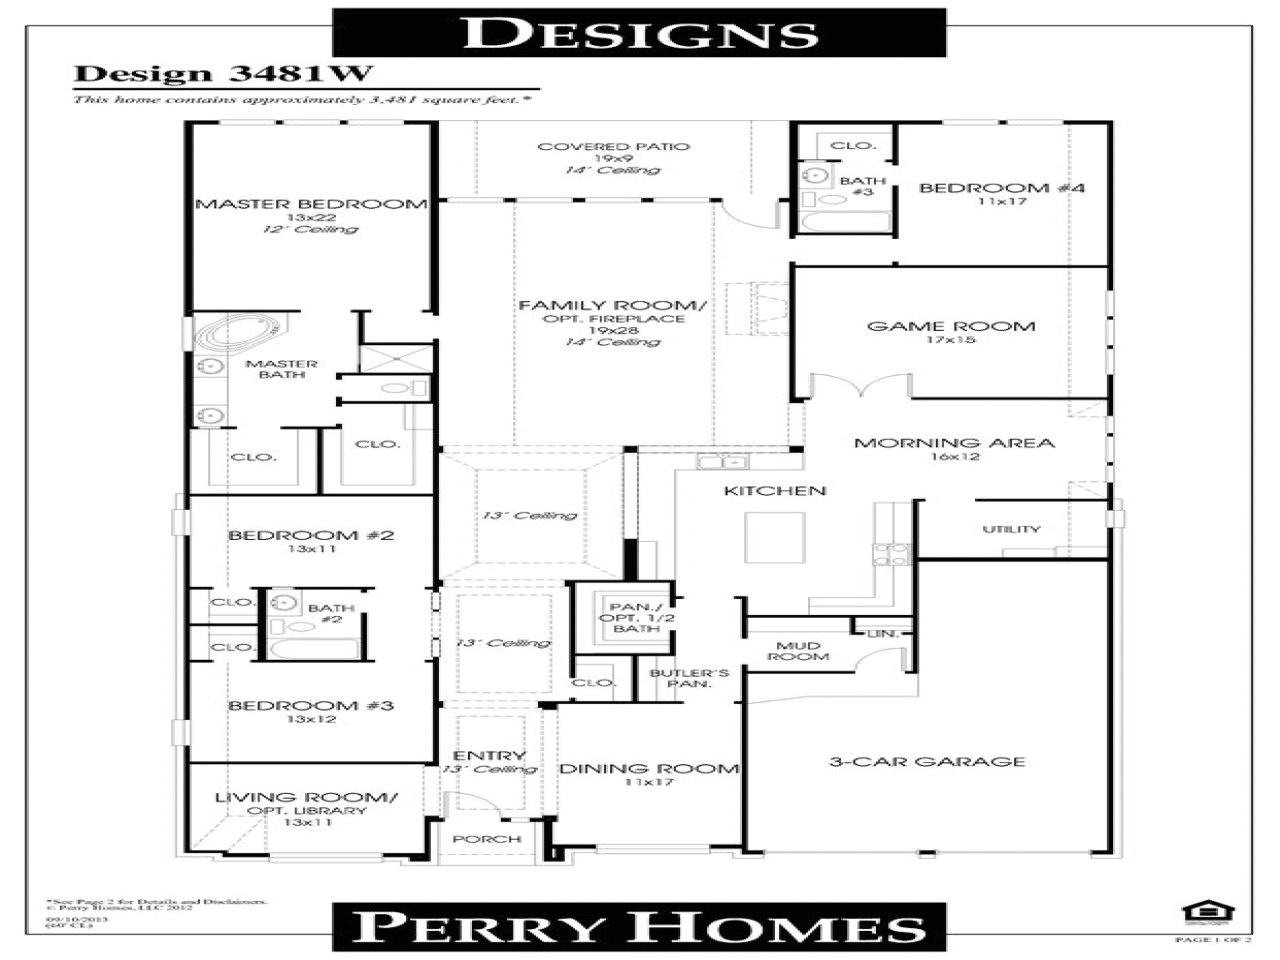 Perry Homes Floor Plans Houston Open Floor Plans Small Home Perry Homes Floor Plans Dream